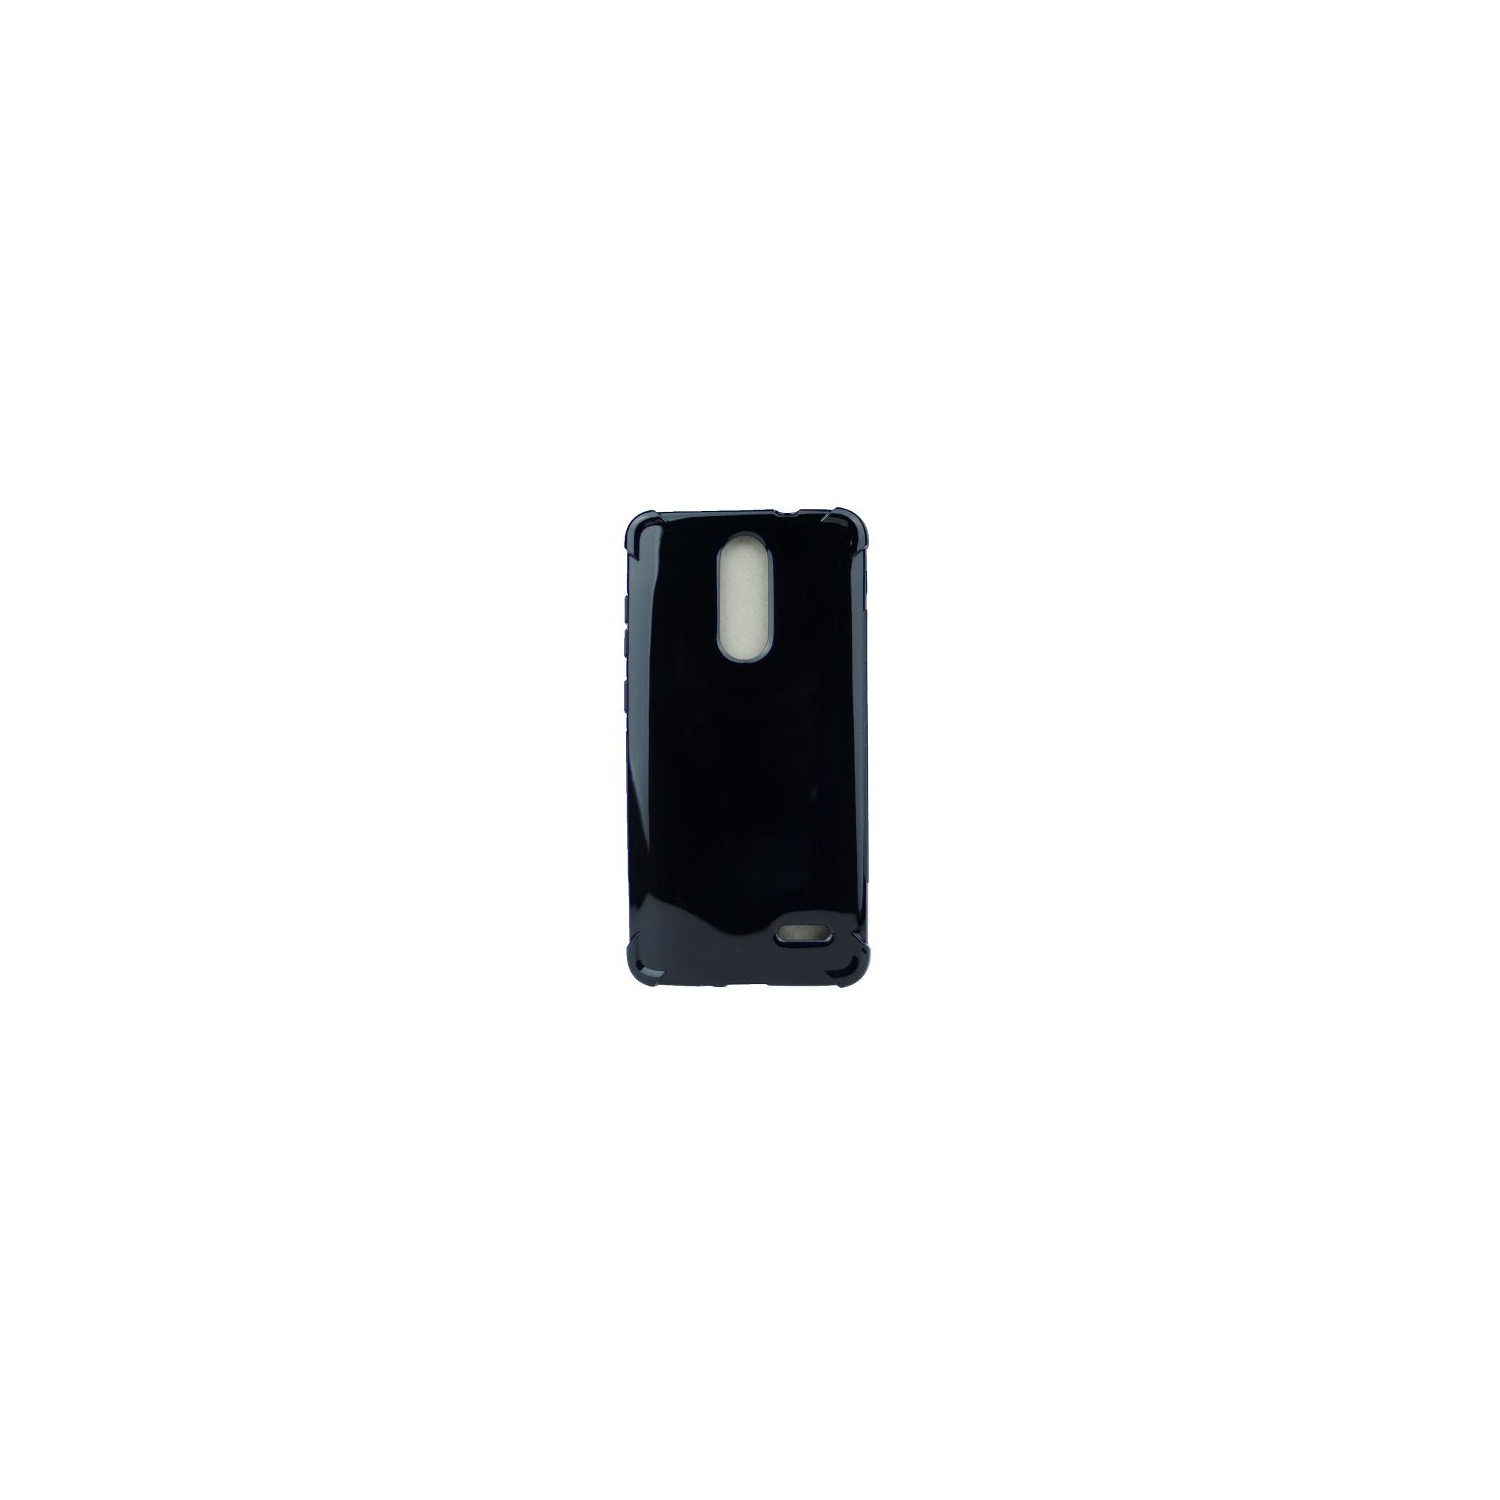 Final Sale! TopSave Extra Corner Bumper Soft Gel Rubber TPU Case For ZTE Grand X4, Black